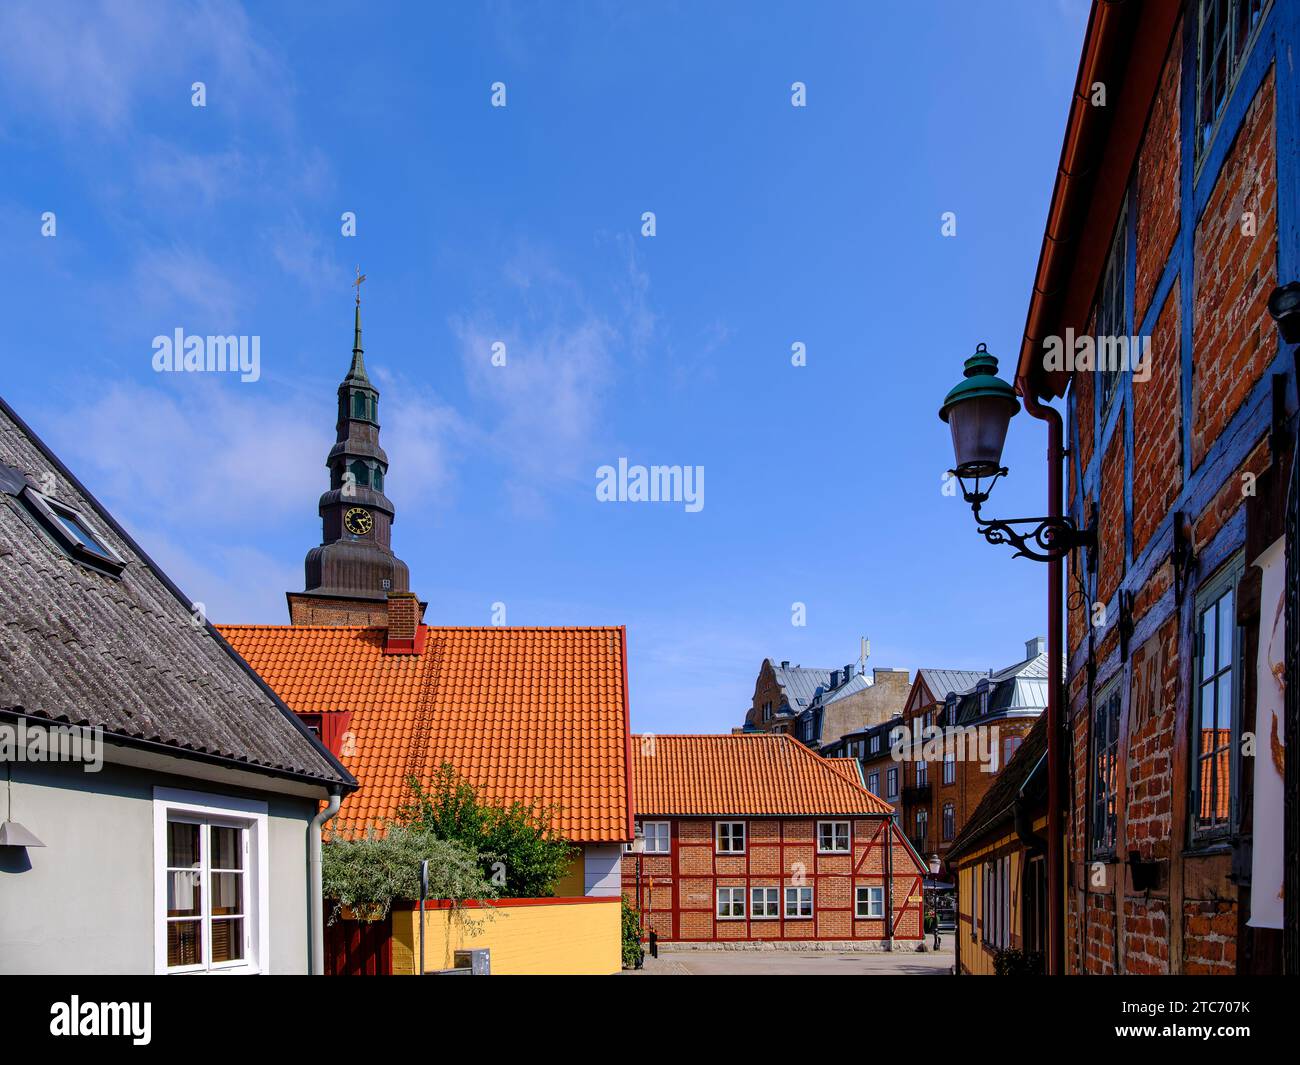 Malerische Gasse und Altstadtkulisse mit Blick zur Sankt-Marien-Kirche in Ystad, Schonen, Skane län, Schweden. Banque D'Images